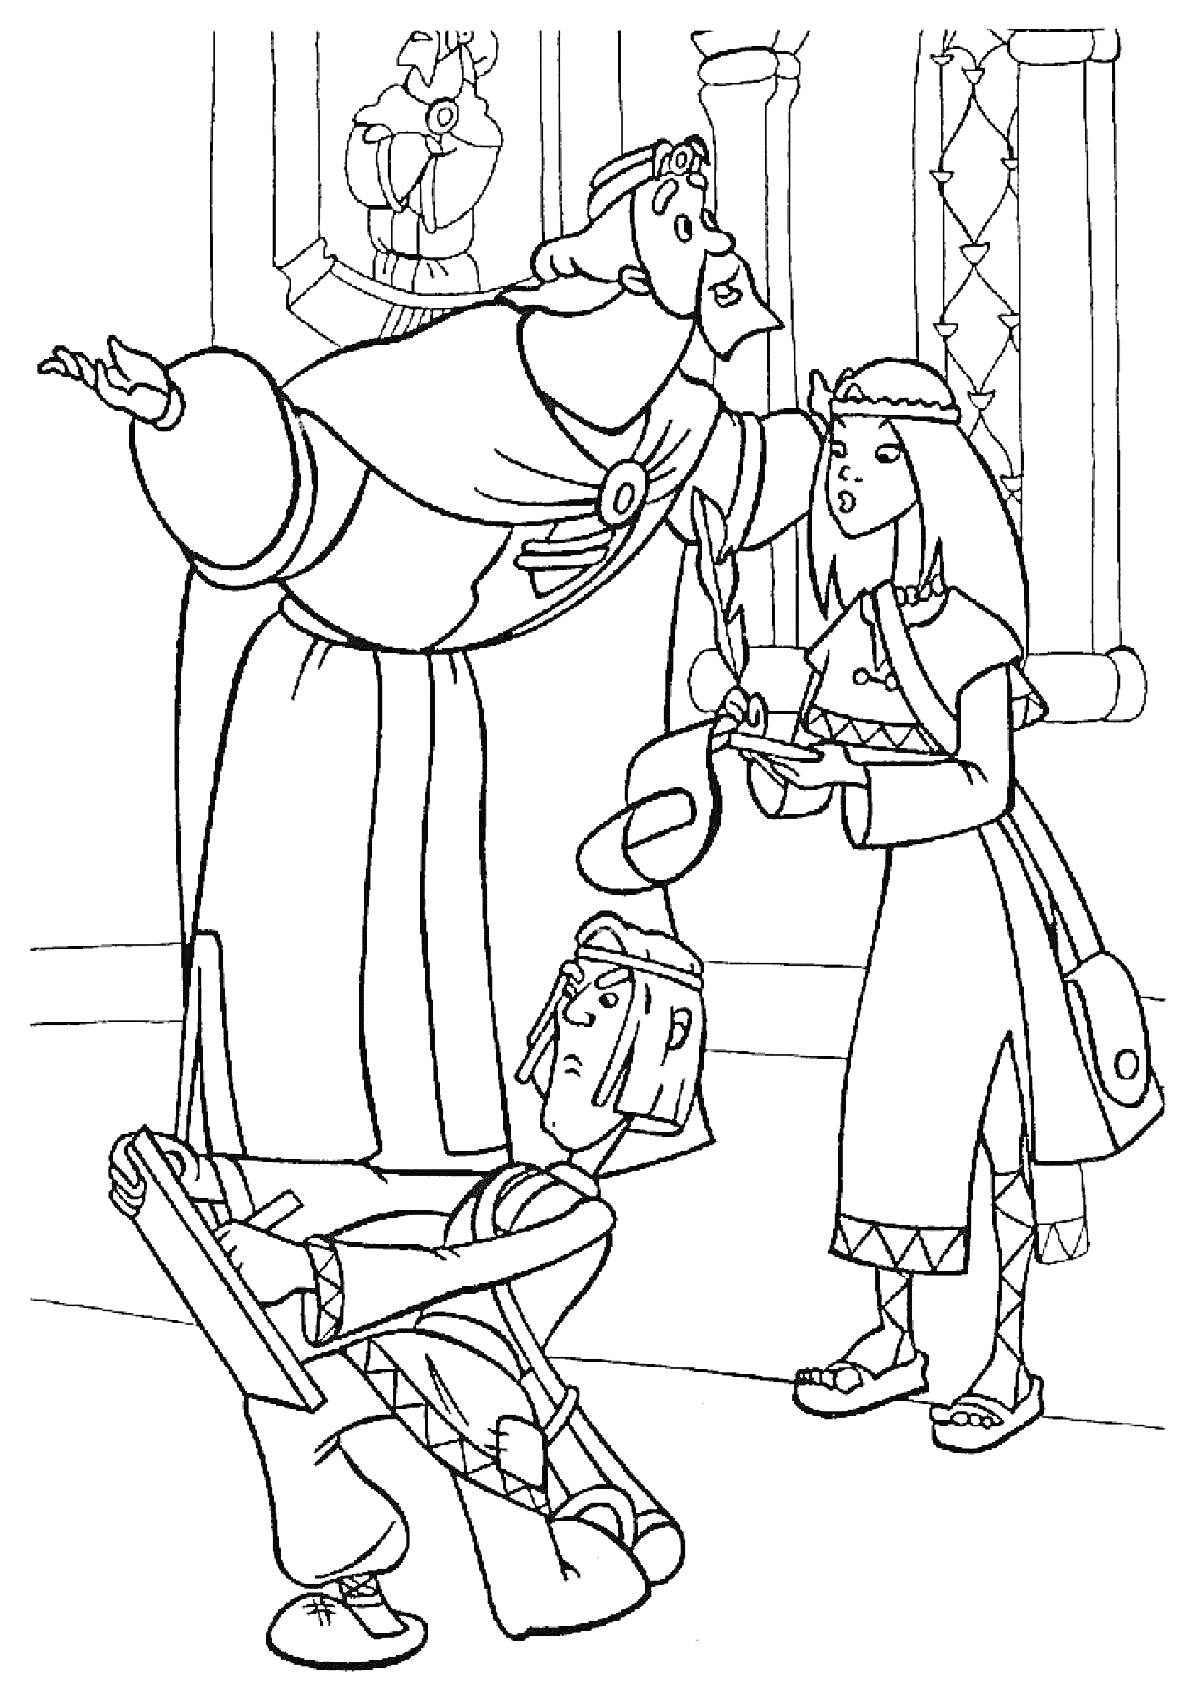 Раскраска Три богатыря с князем и девушкой, один богатырь в доспехах держит свиток, все находятся в замке